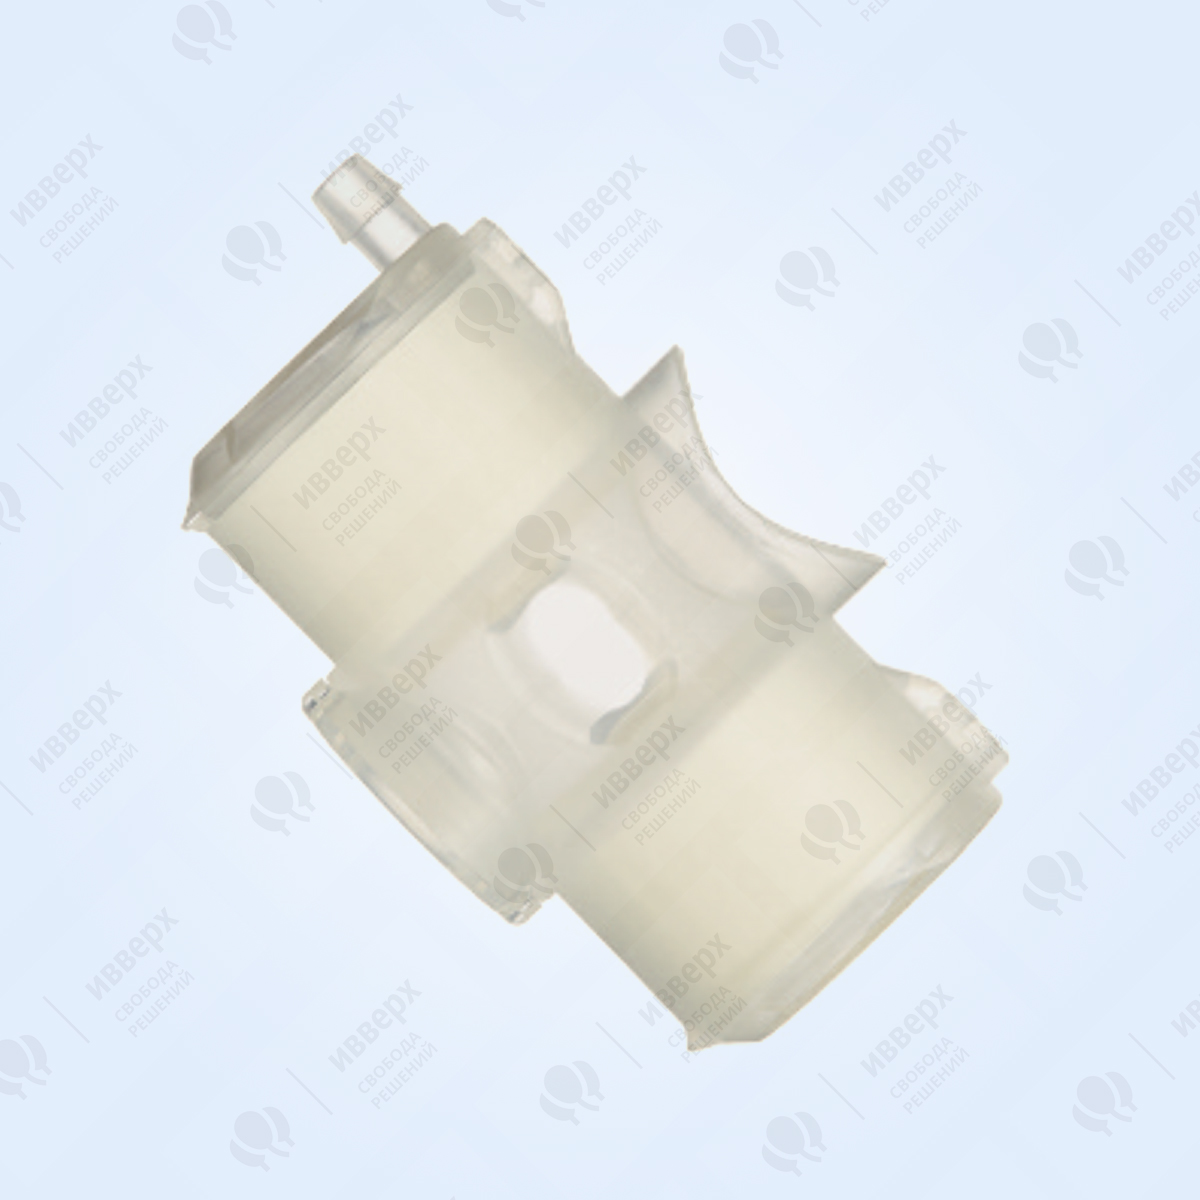 Тепловлагообменный фильтр Трахеалкит® Sofit Vent LO2 с портом для санации